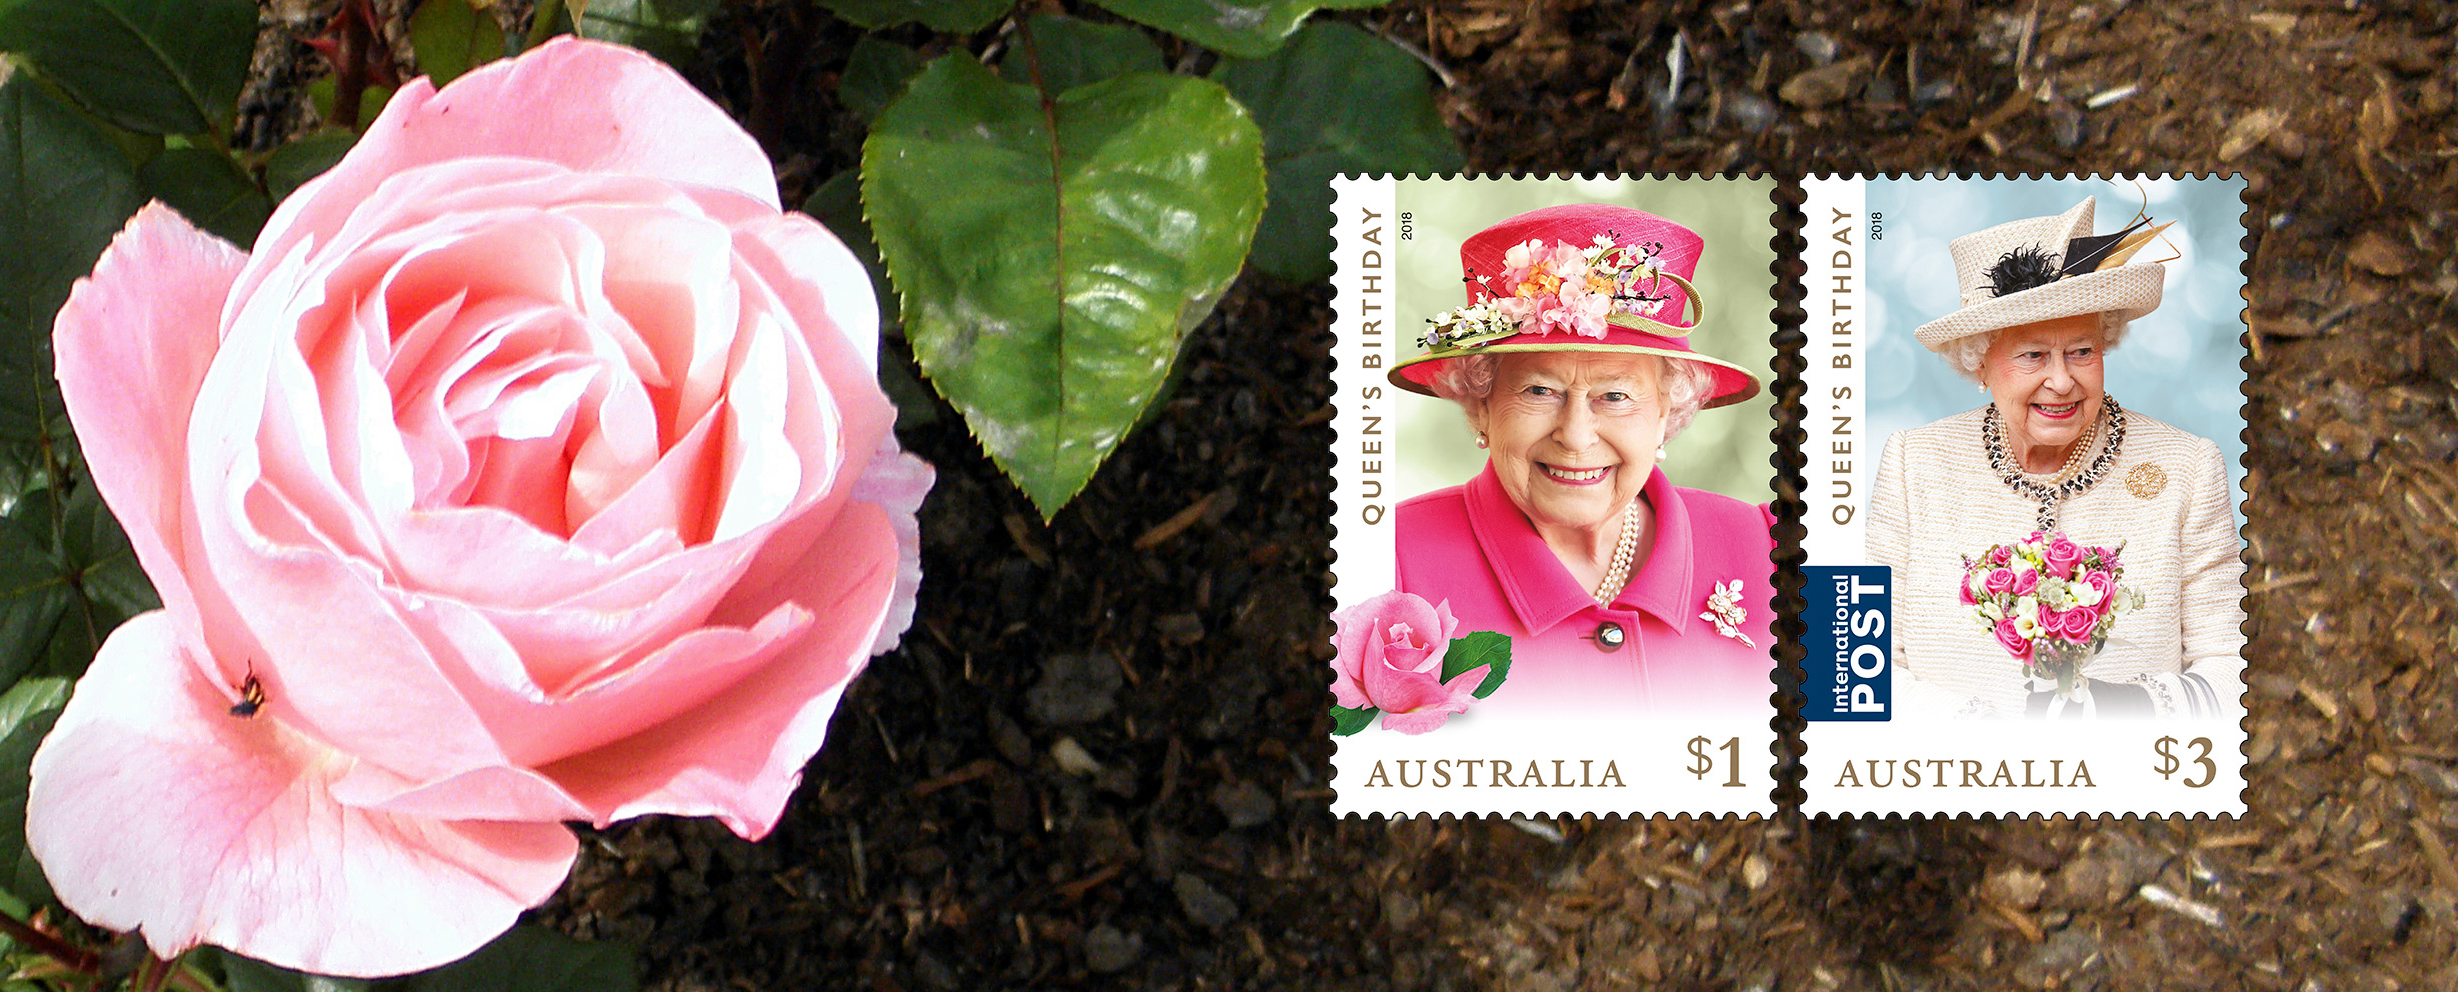 The Queen Elizabeth Rose Australia Post